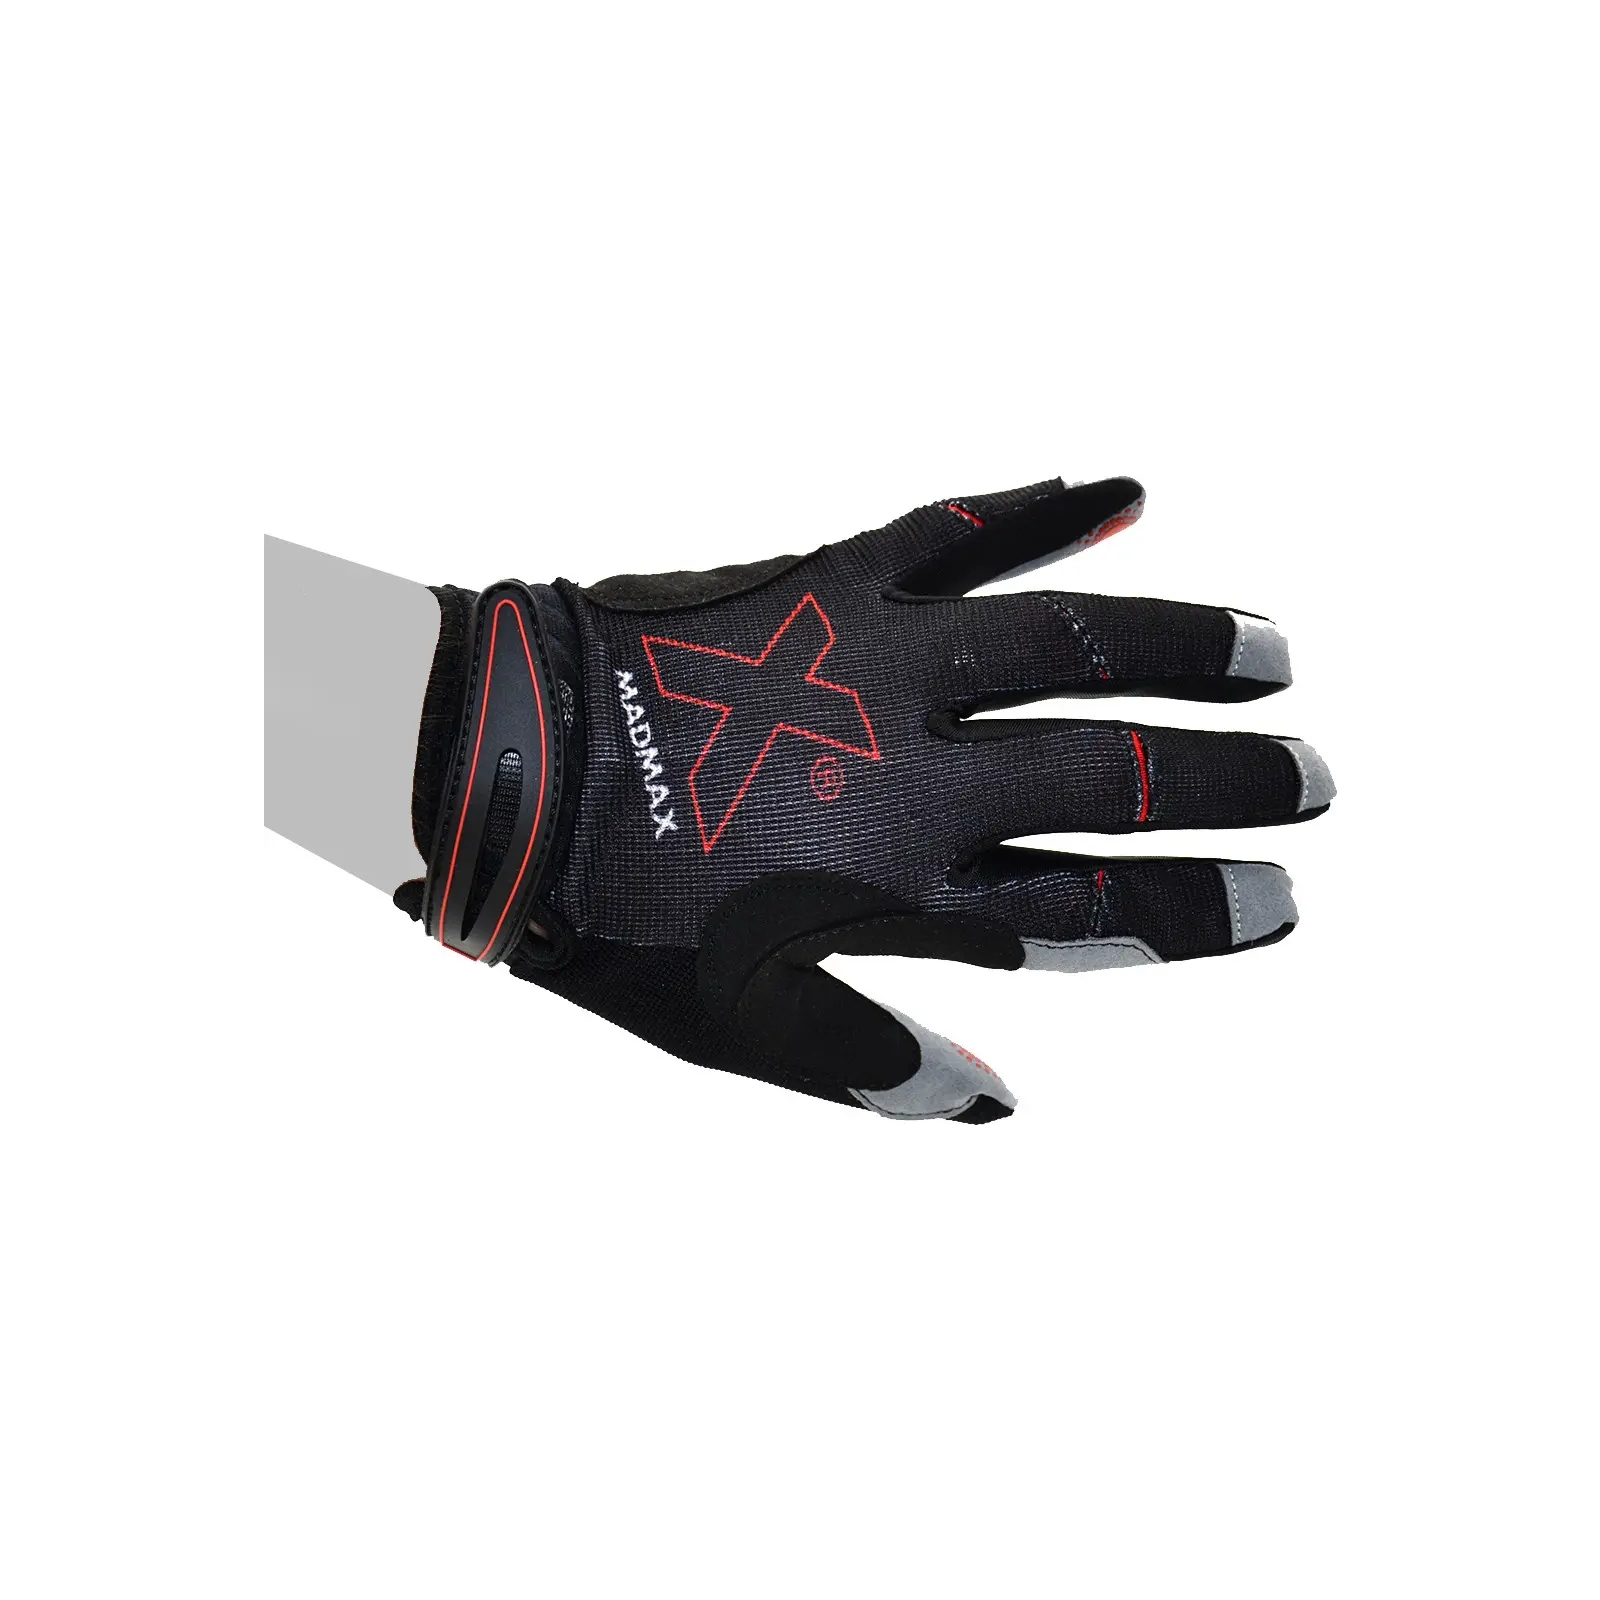 Рукавички для фітнесу MadMax MXG-103 X Gloves Black/Grey XL (MXG-103-BLK_XL) зображення 8